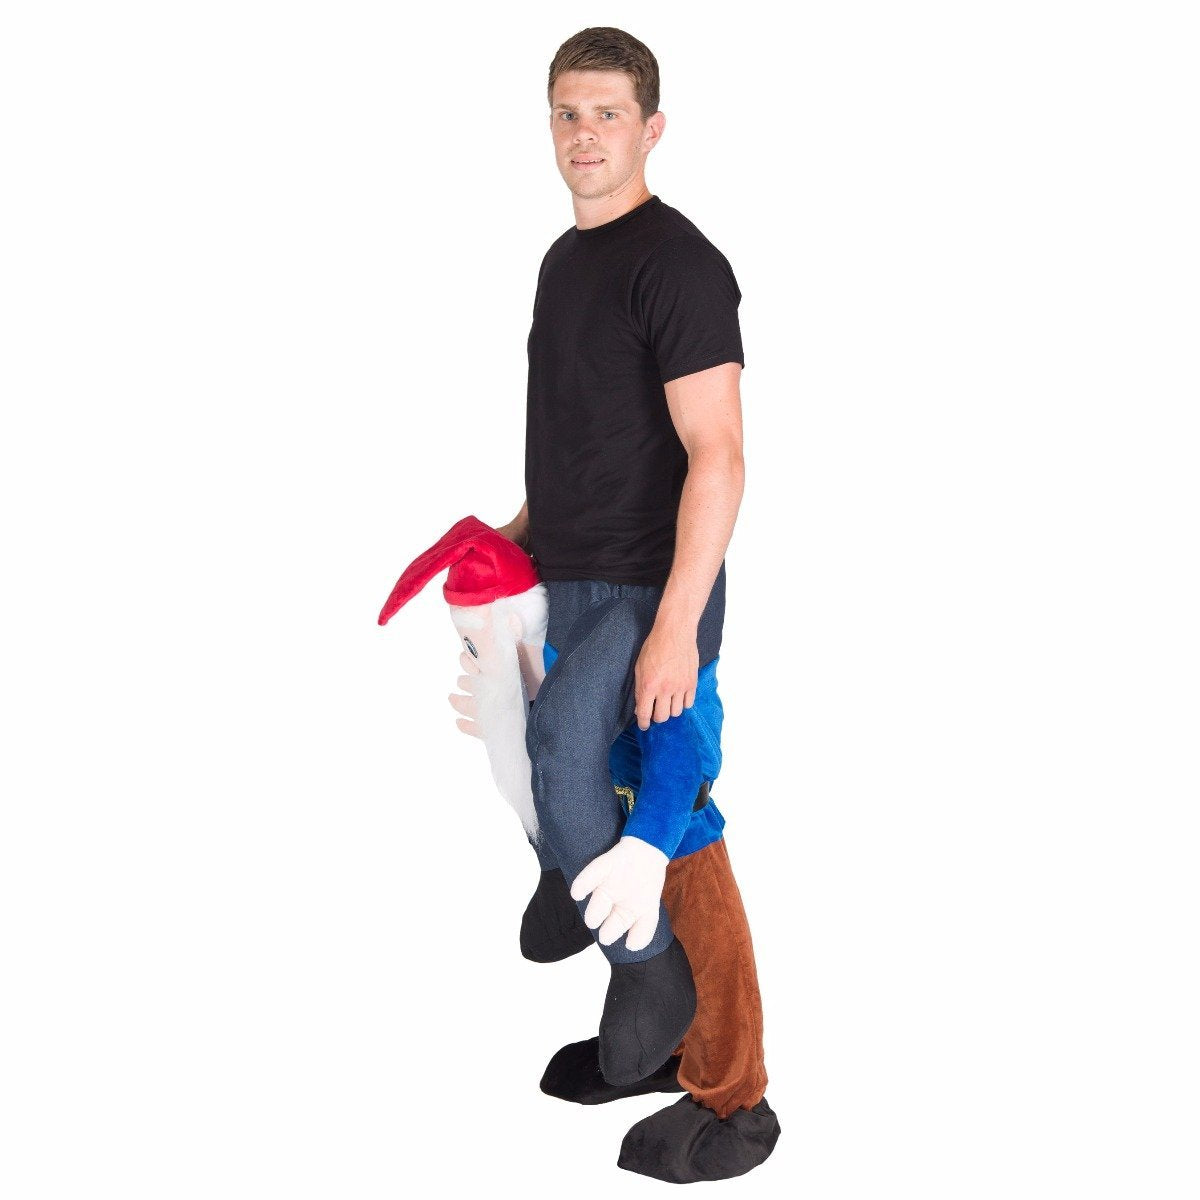 Bodysocks - Piggyback Gnome Costume